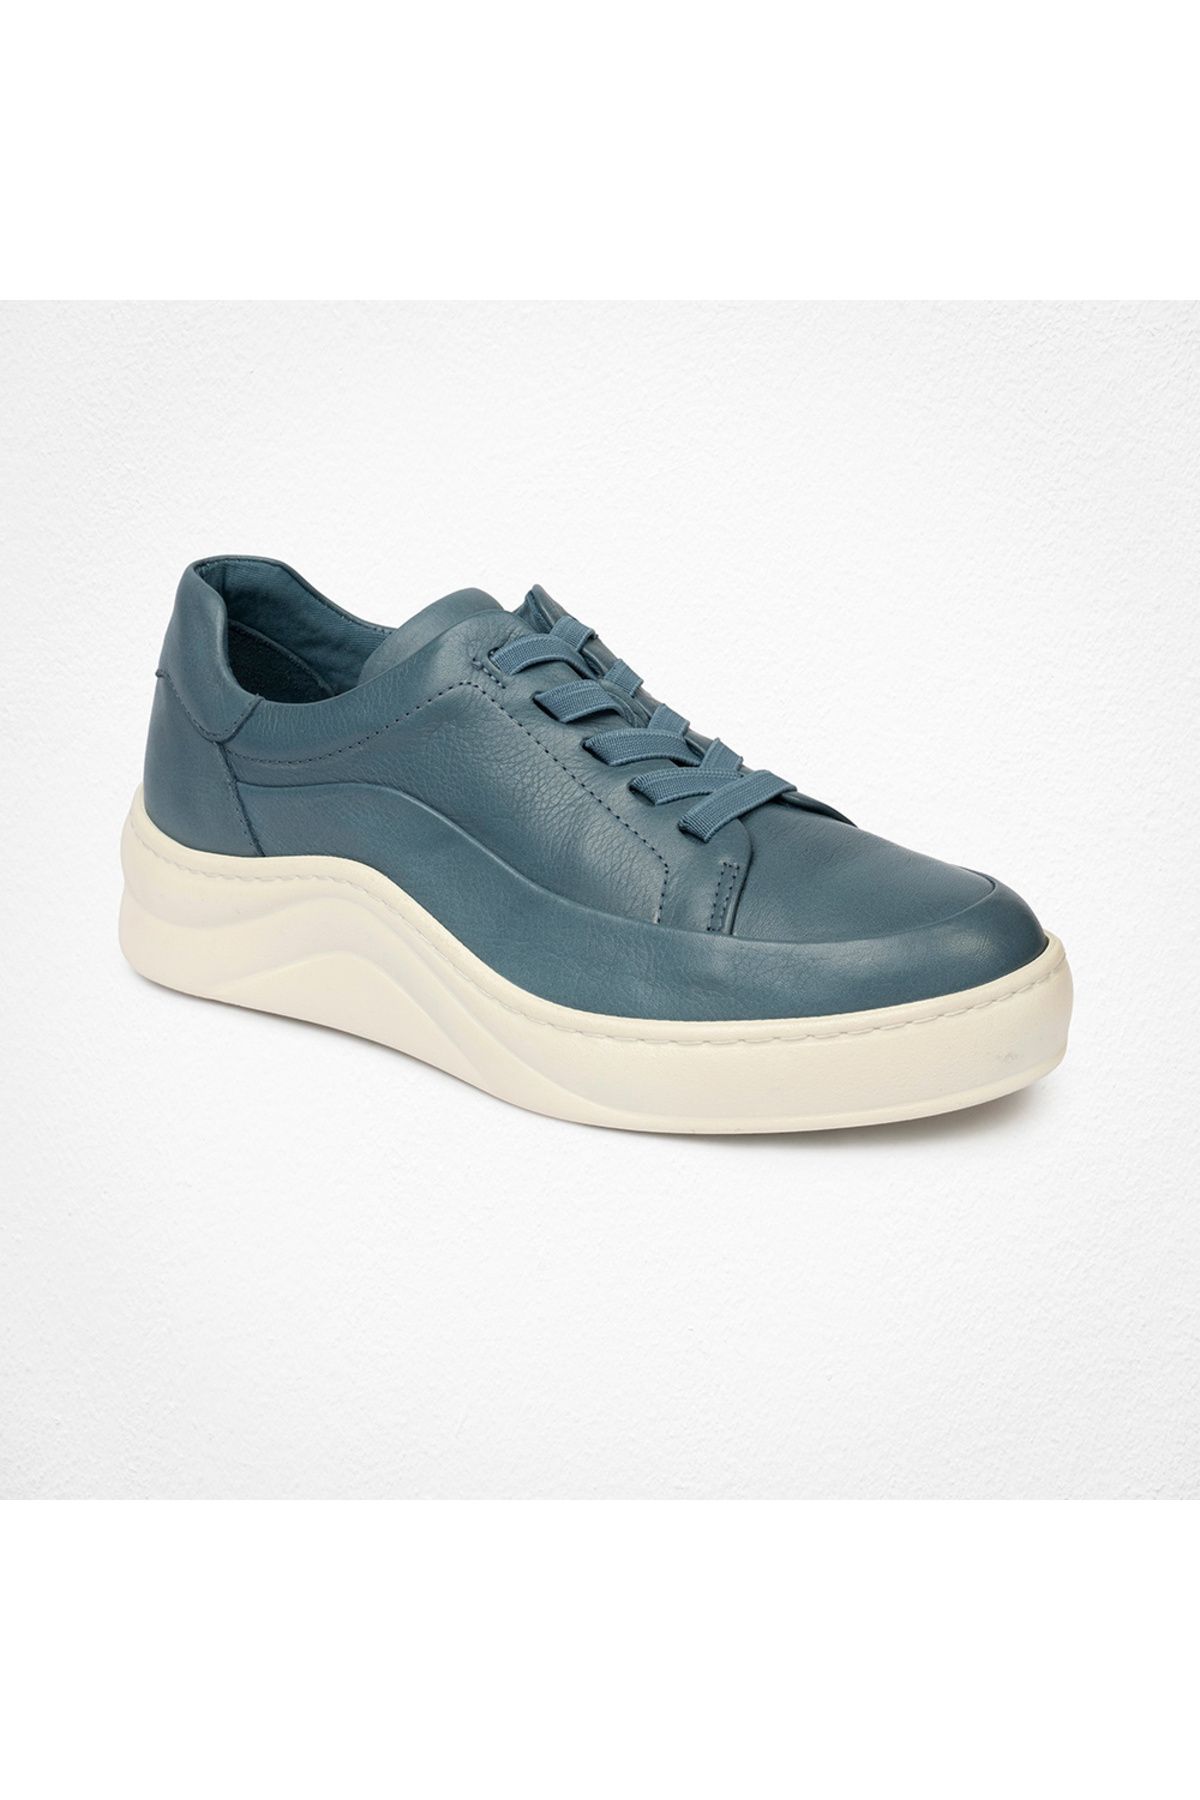 Greyder Kadın Kot Mavi Hakiki Deri Sneaker Ayakkabı 4y2fa59052